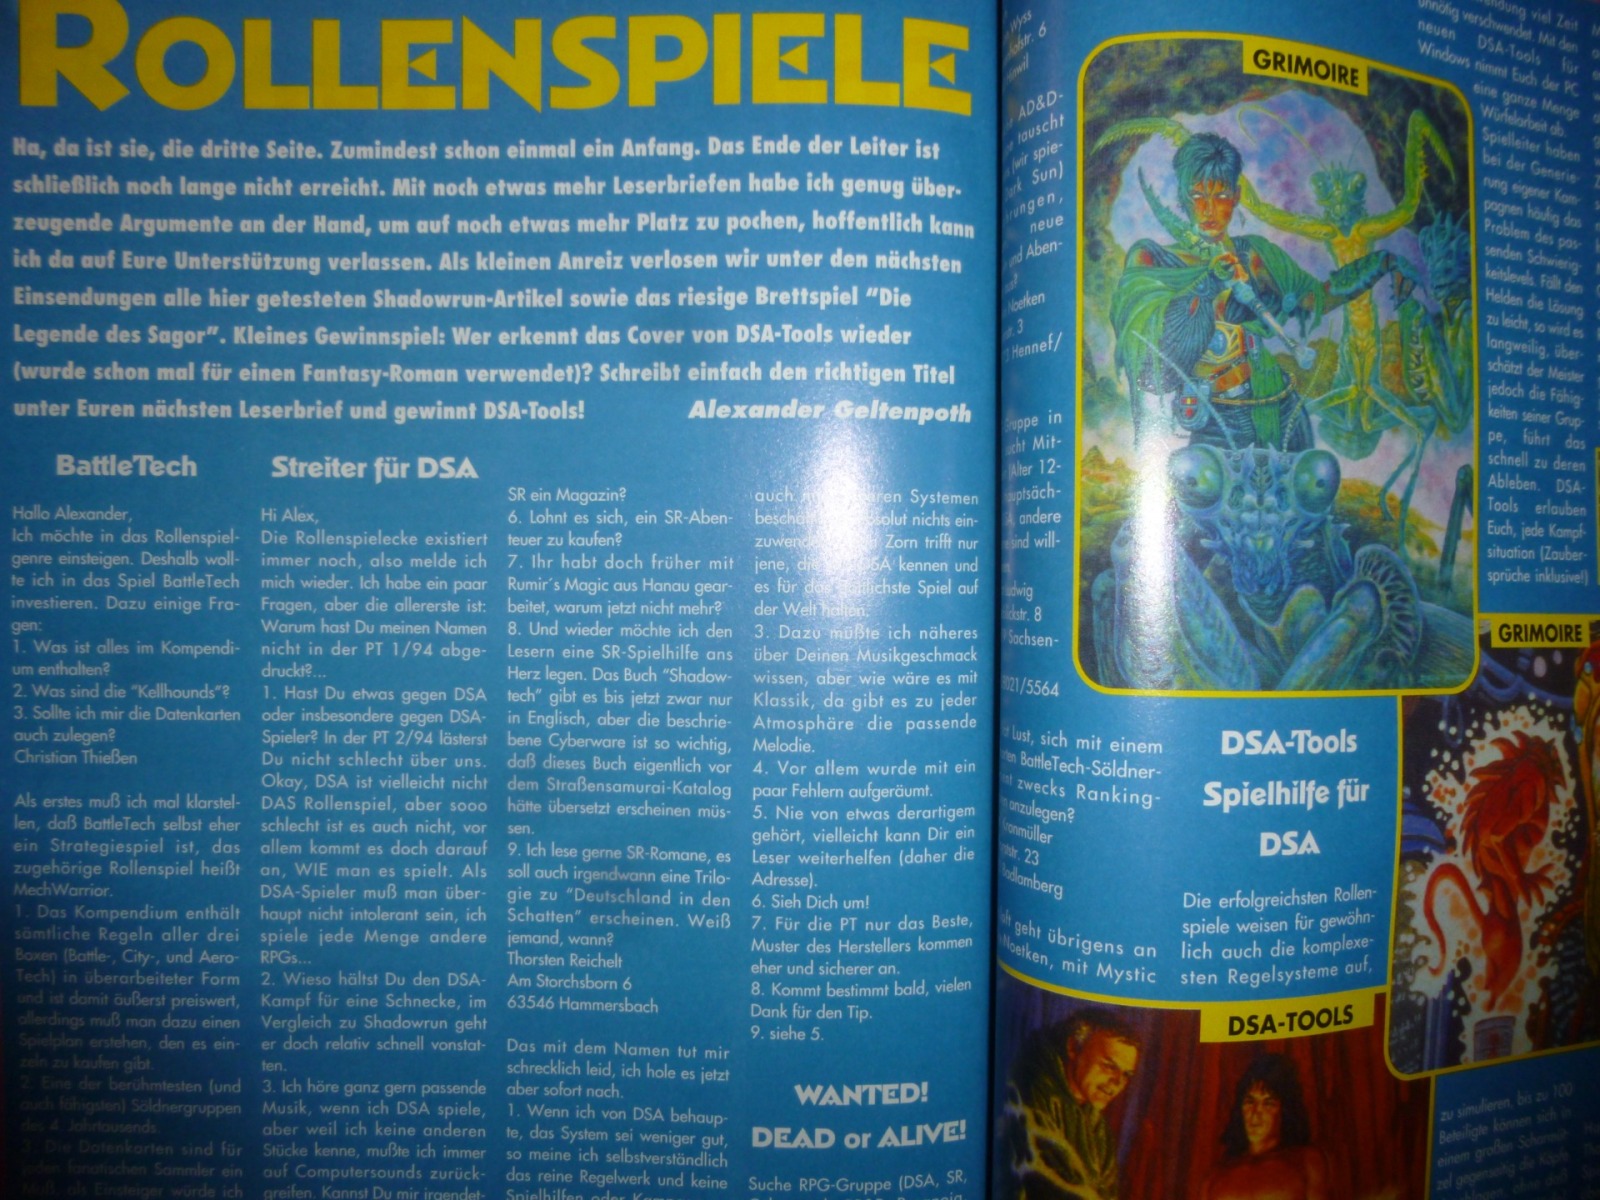 Play Time - Das Computer- und Videospiele-Magazin - Ausgabe 4/94 1994 35